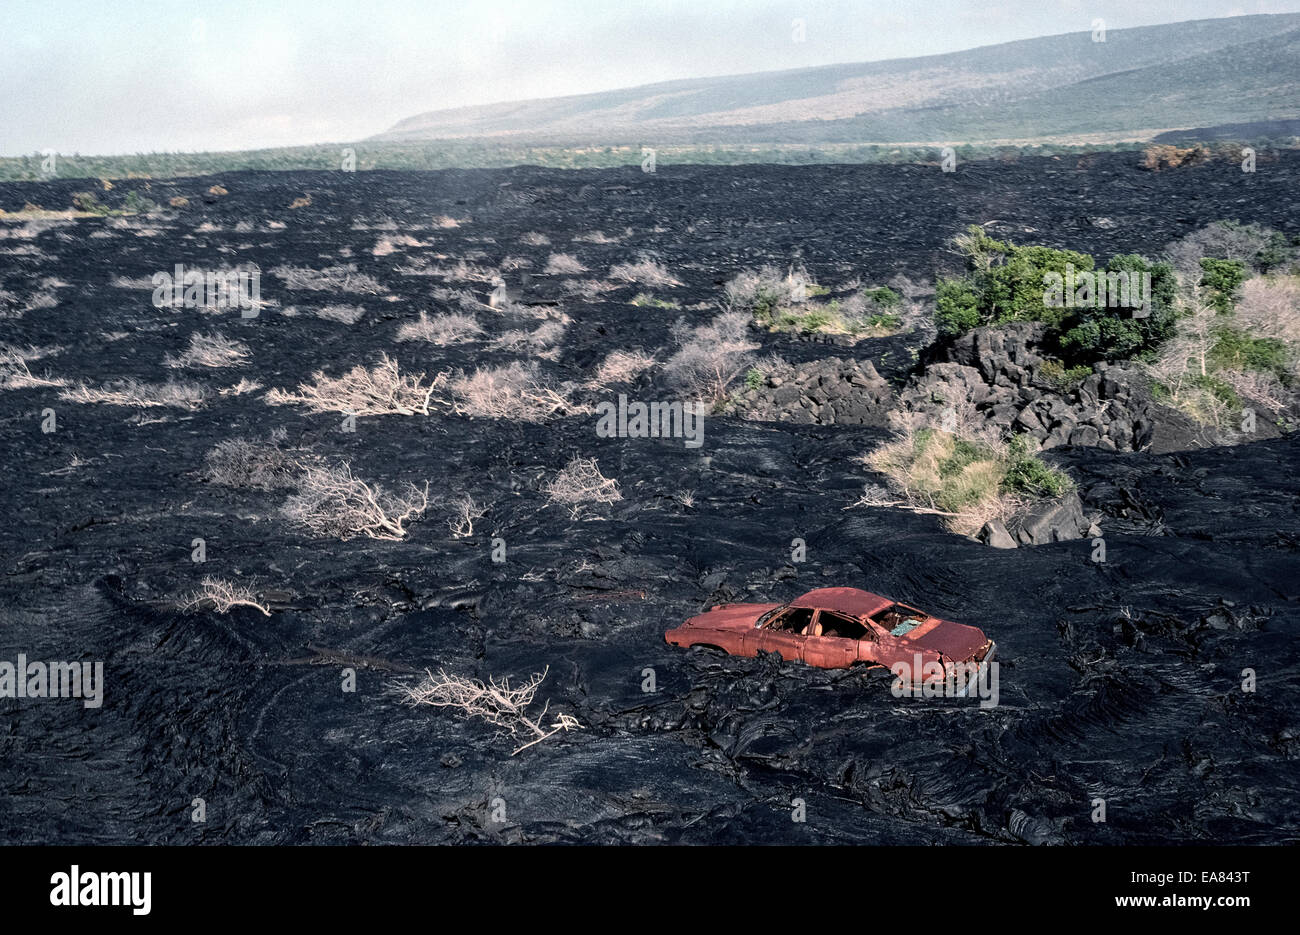 Ein altes rostiges Auto bleibt entlang einer Straße bedeckt von Lava aus einem Vulkanausbruch in the1980s auf der Big Island von Hawaii, USA. Stockfoto